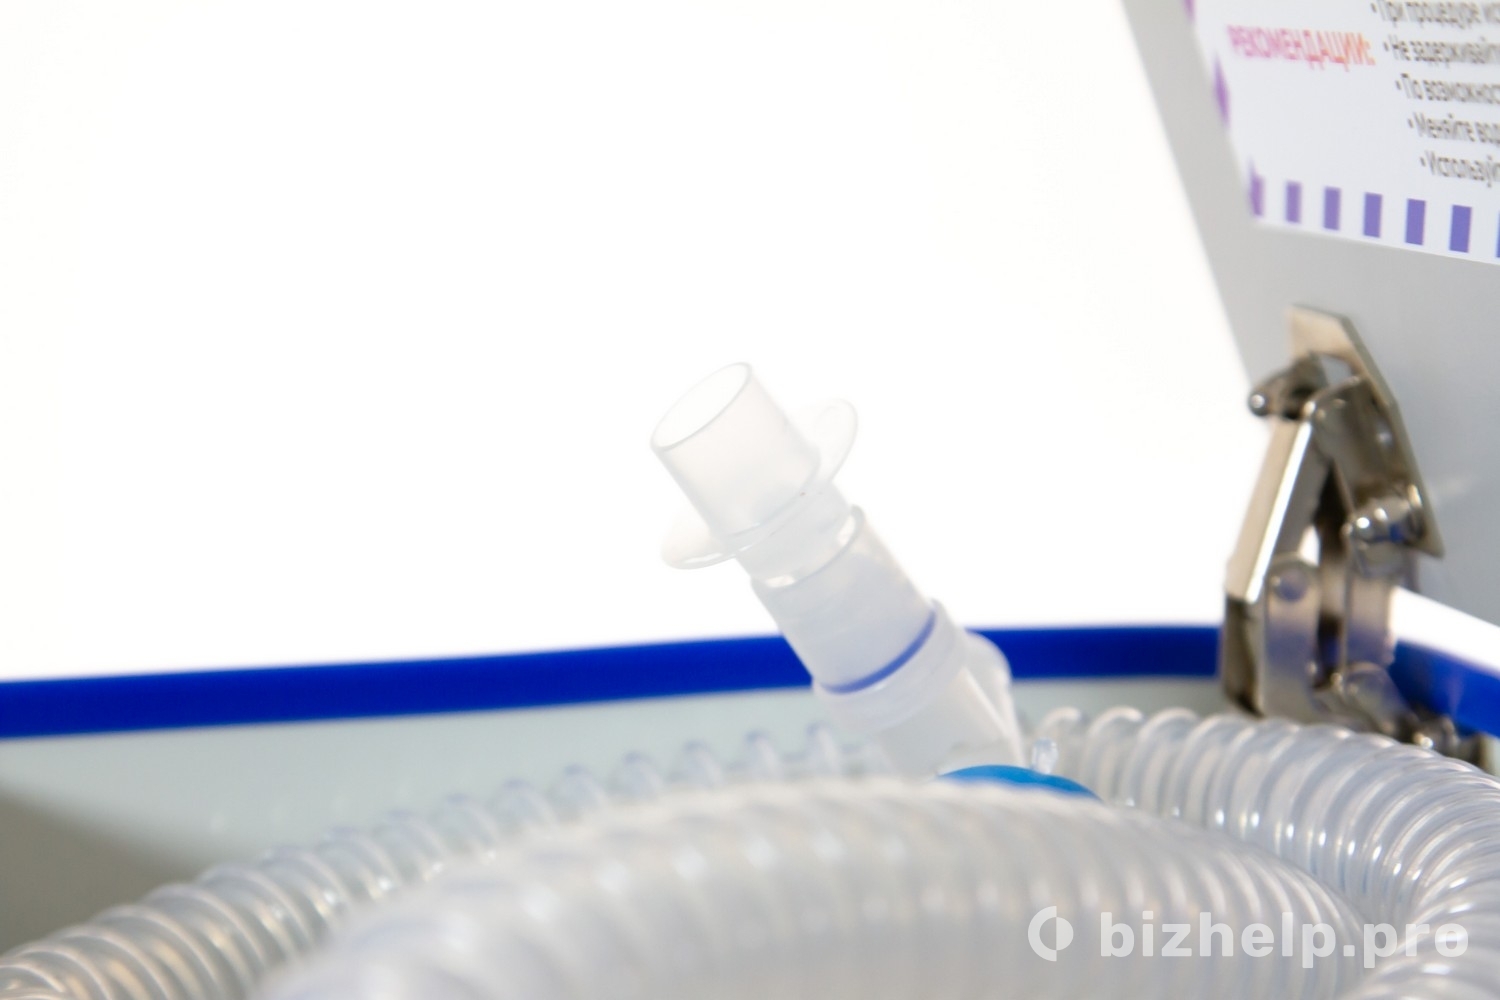 Фотография 5: Домашний аппарат для дыхания кислородом и кислородными миксами 5L